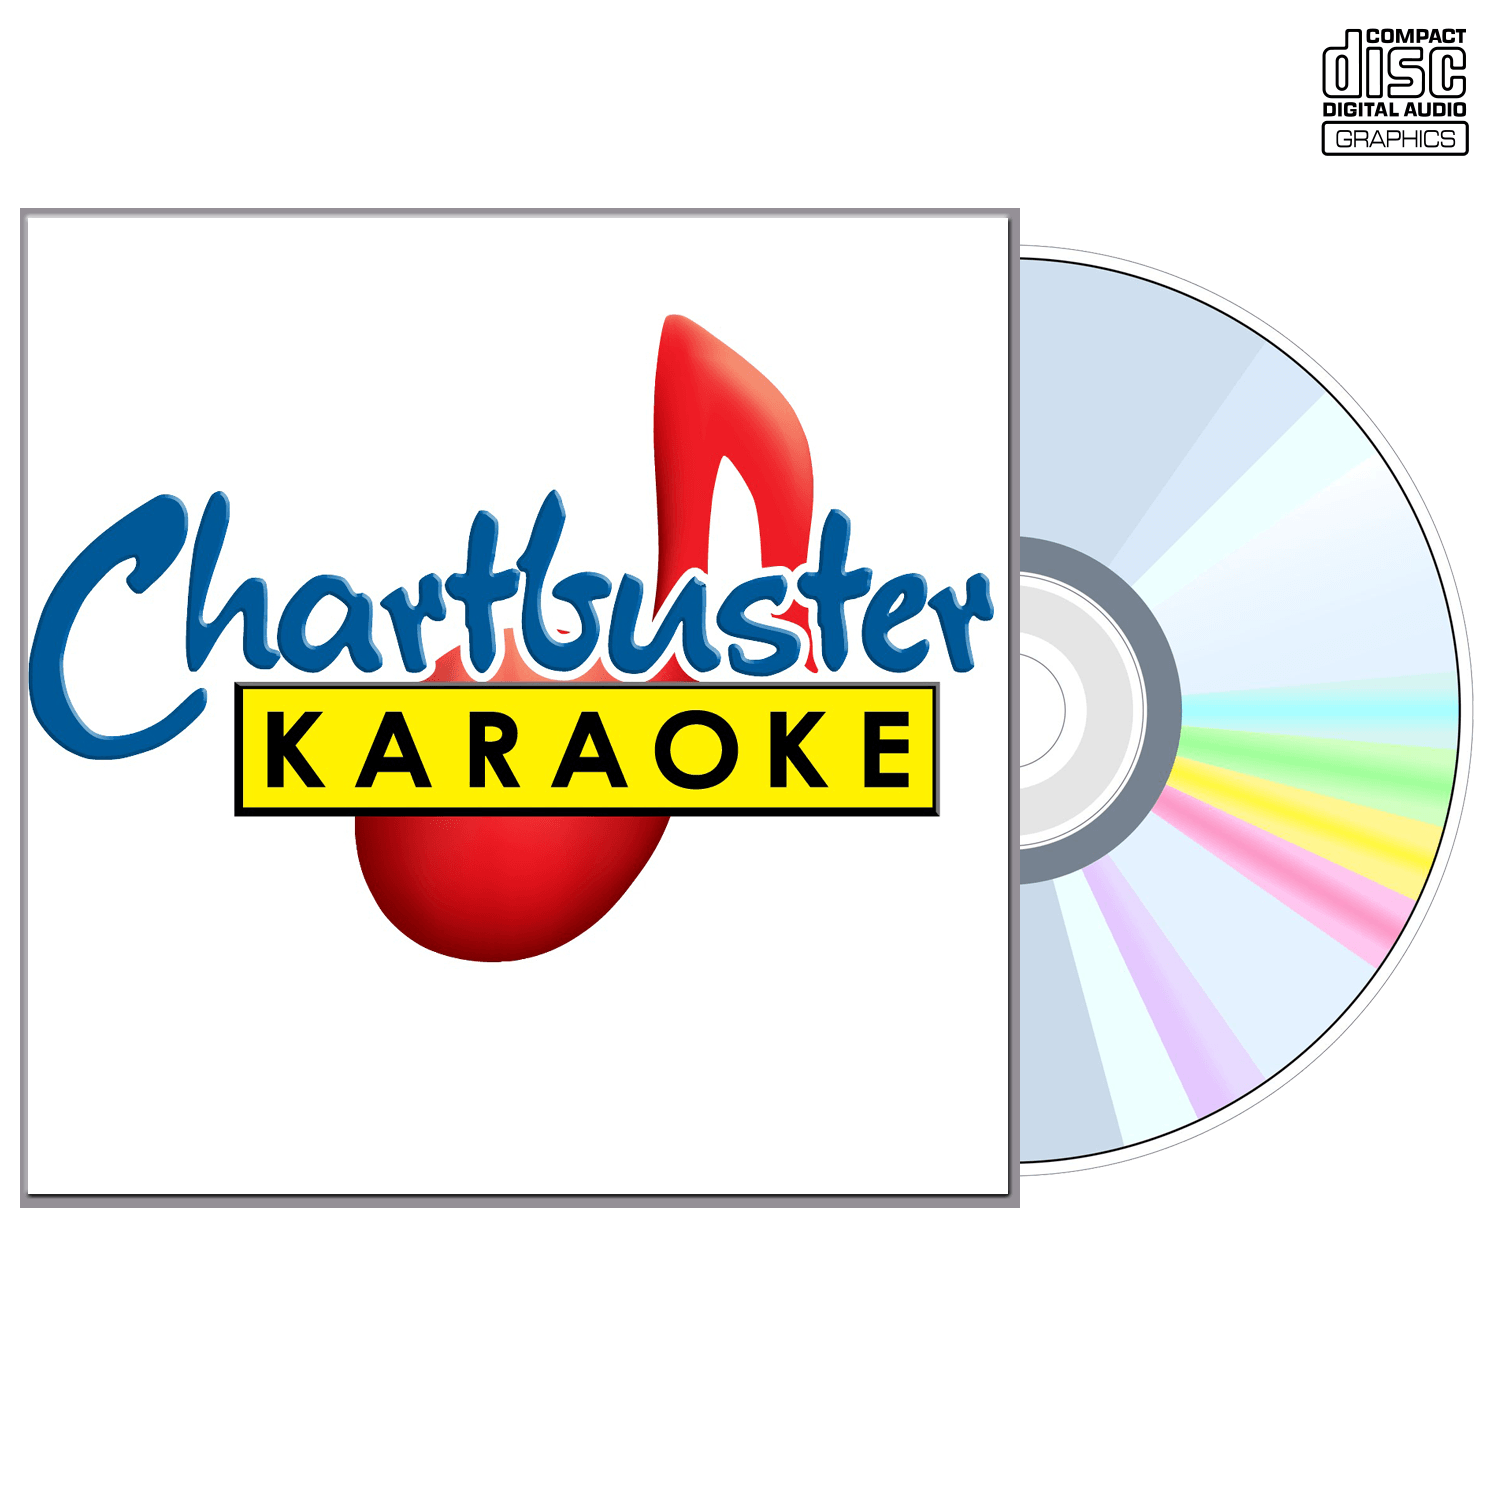 Ty Herndon - CD+G - Chartbuster Karaoke - Karaoke Home Entertainment